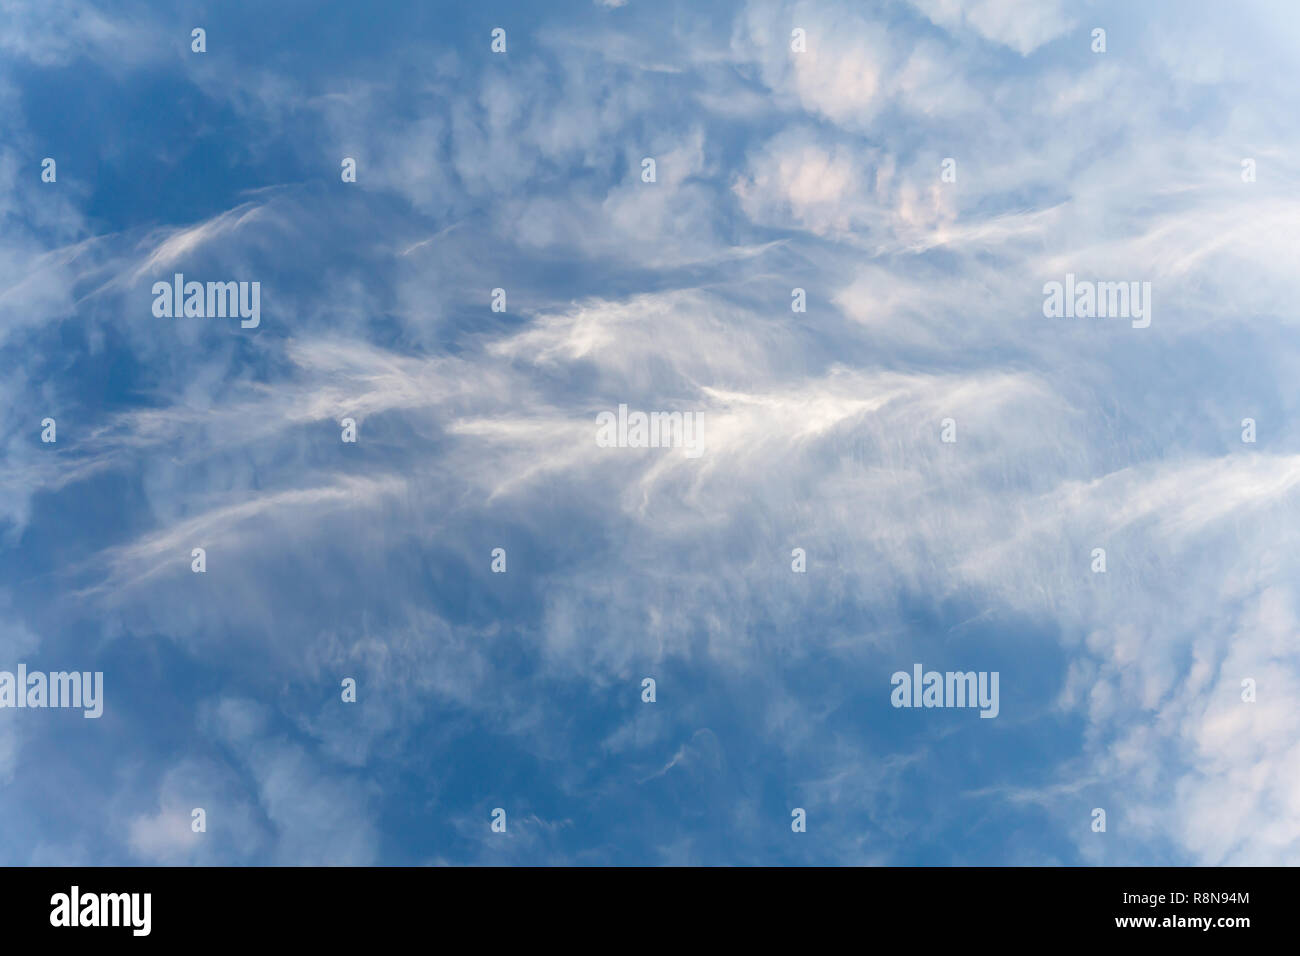 Ein Himmel mit Zirruswolken gefüllt. Cirrus ist eine Gattung der atmosphärischen Cloud durch dünne, wispy Stränge gekennzeichnet. Stockfoto